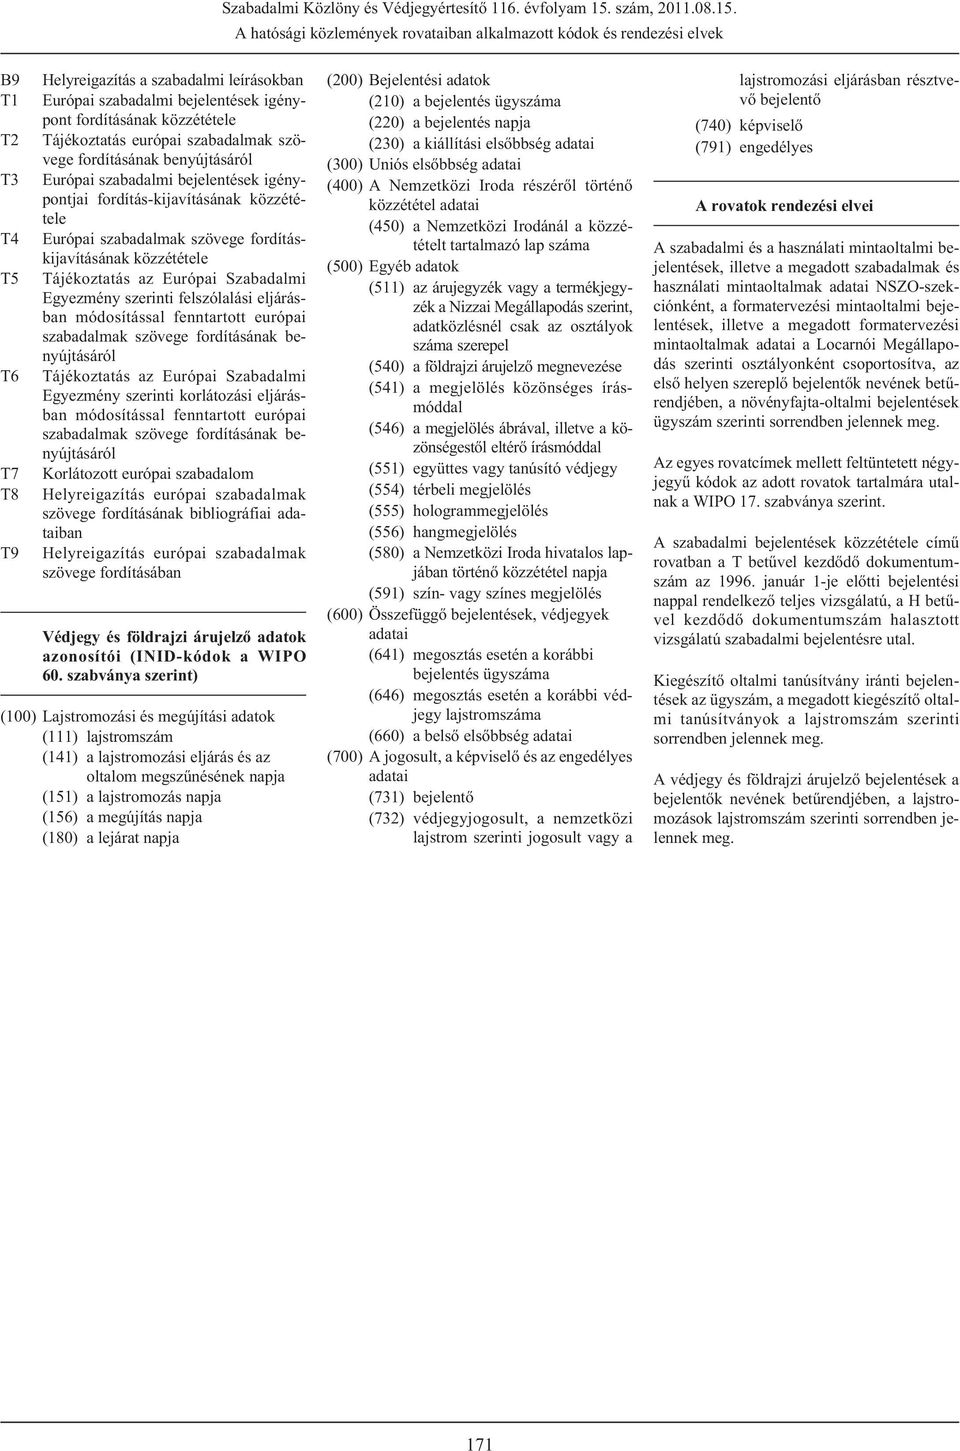 A hatósági közlemények rovataiban alkalmazott kódok és rendezési elvek B9 T1 T2 T3 T4 T5 T6 T7 T8 T9 Helyreigazítás a szabadalmi leírásokban Európai szabadalmi bejelentések igénypont fordításának